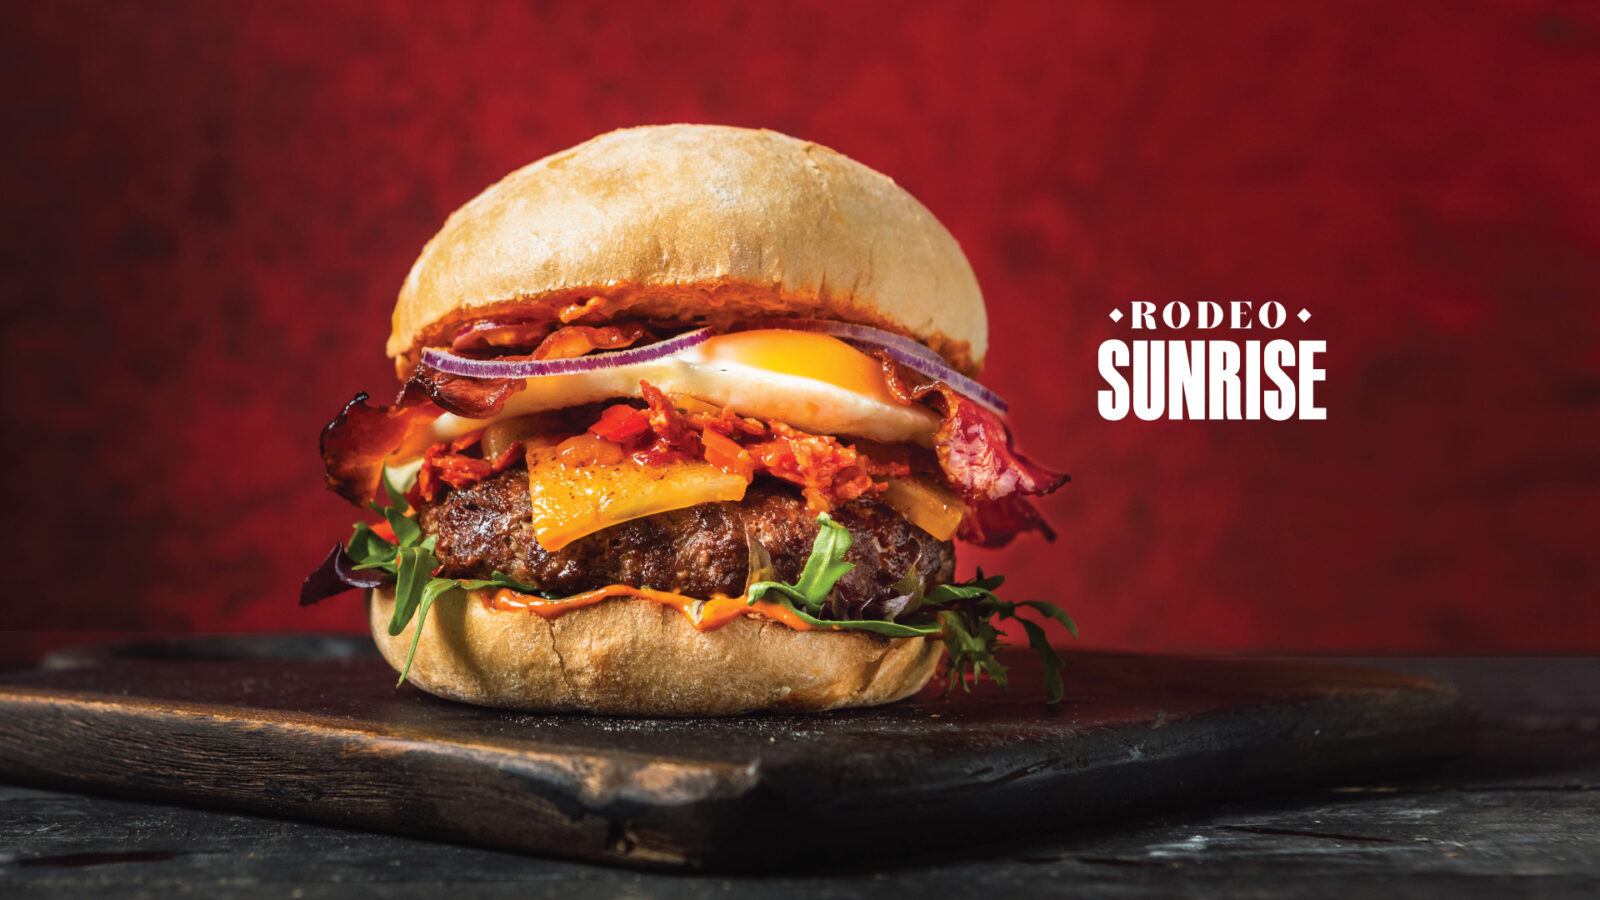 Rodeo Sunset Burger at Ellis Gourmet Burger with logo